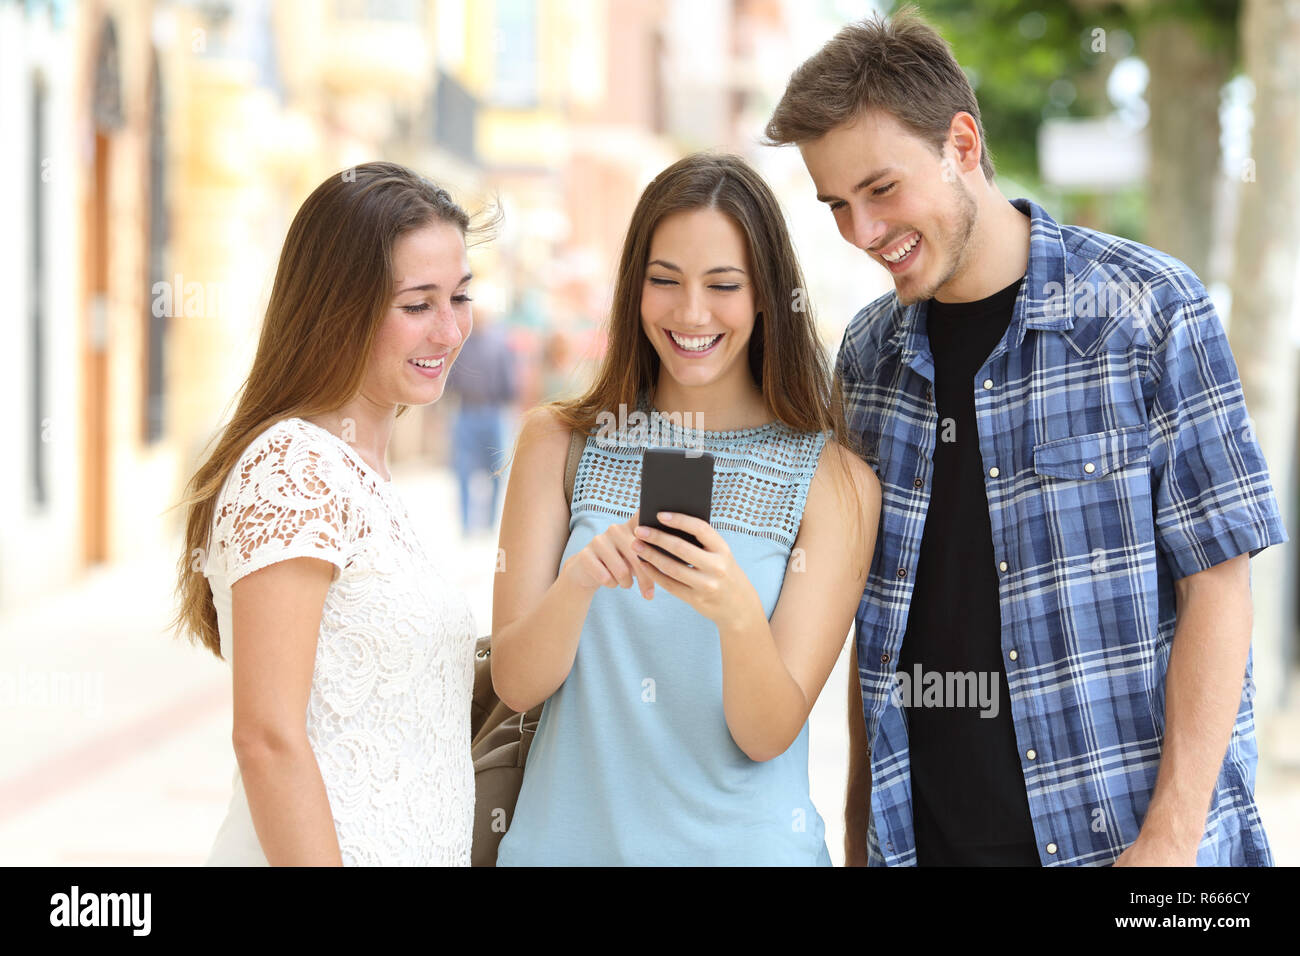 Trois amis heureux smart phone contrôle permanent contenu dans une rue Banque D'Images